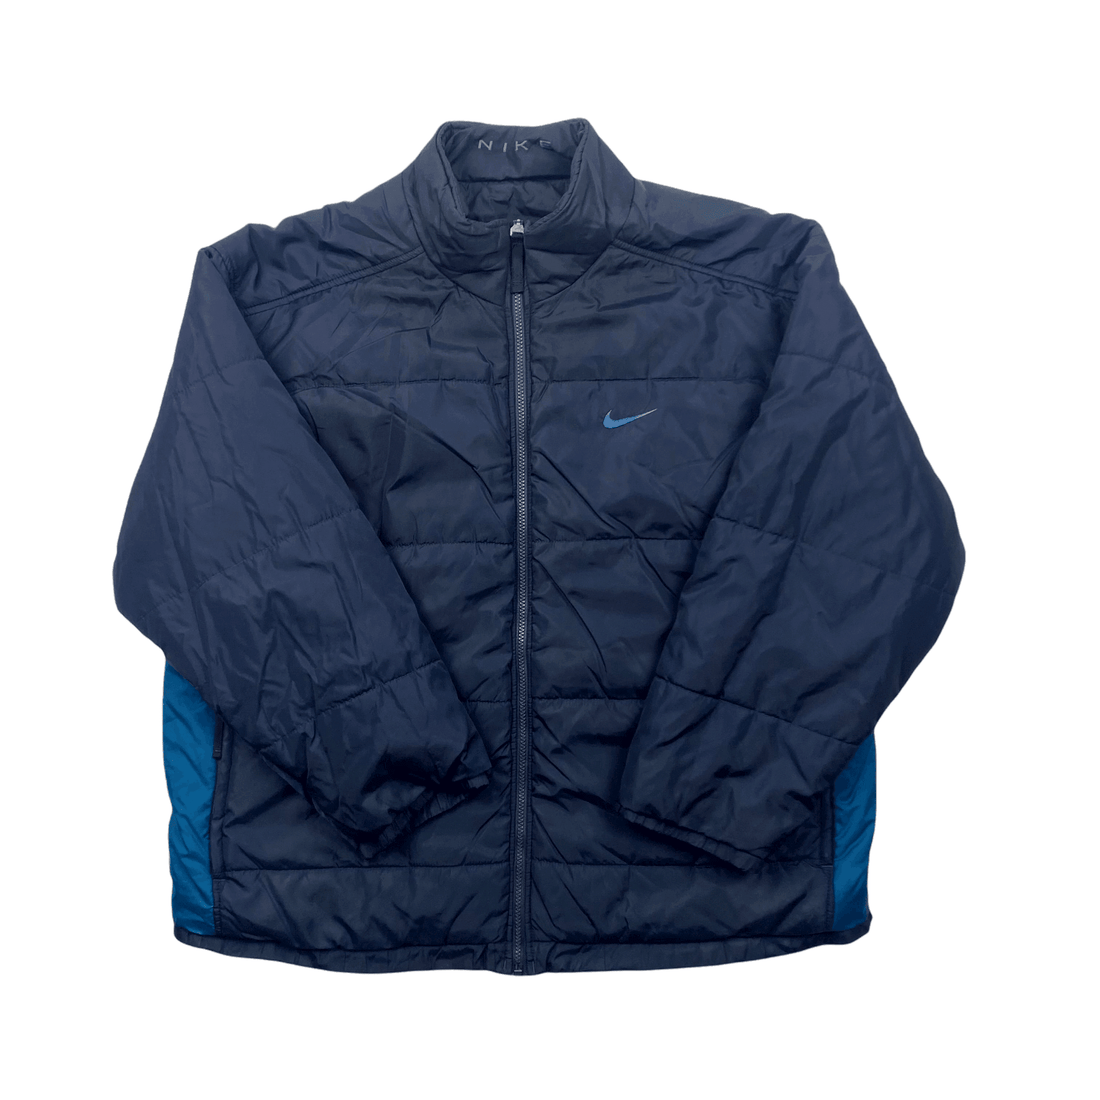 Vintage 90s Navy Blue Nike Reversible Coat/ Jacket - Large - The Streetwear Studio